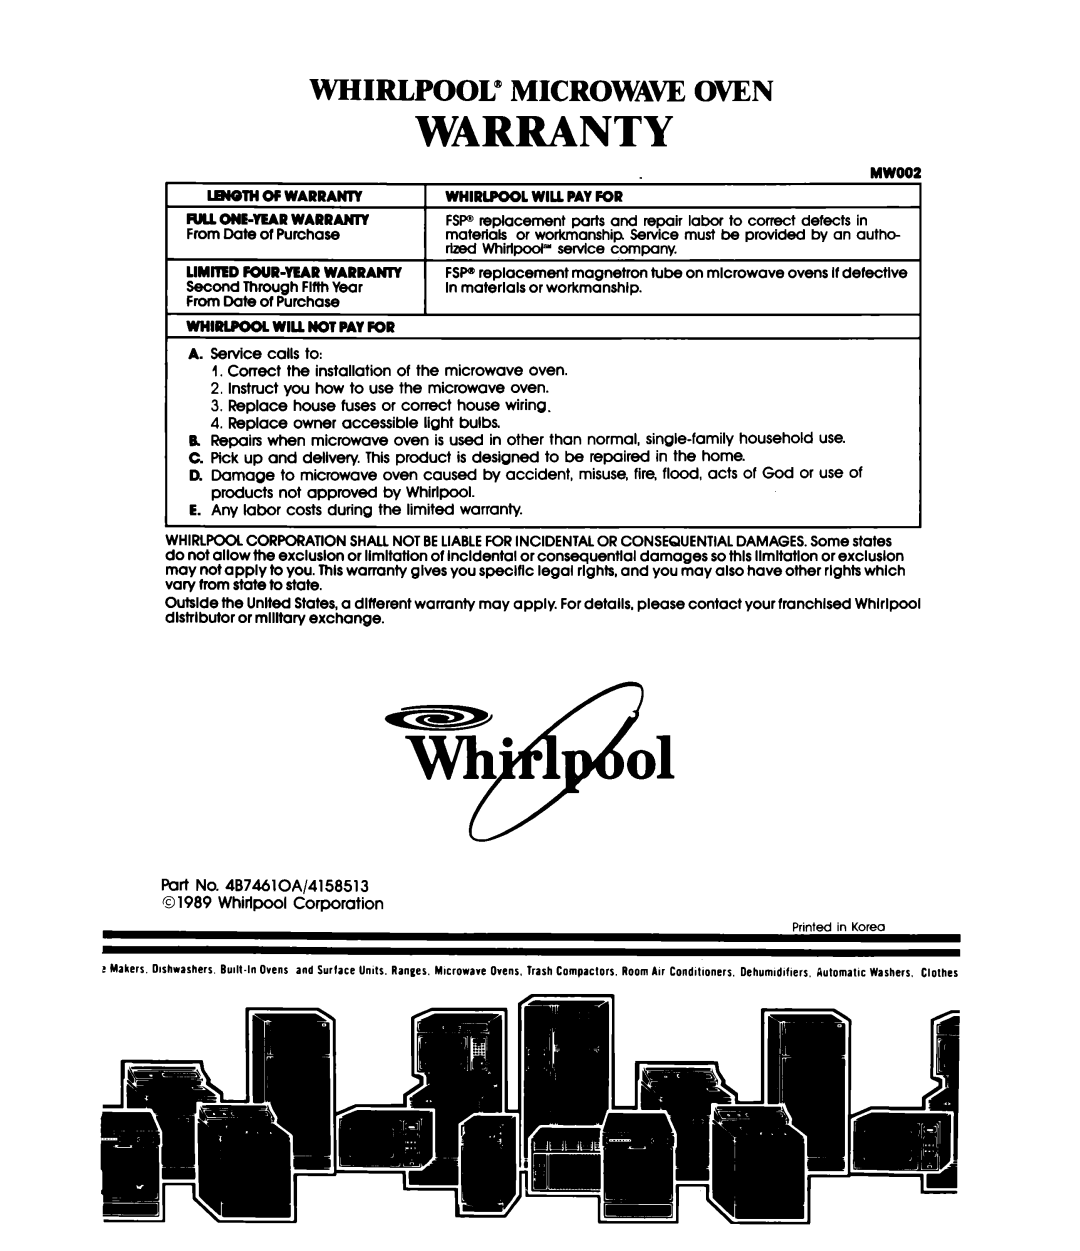 Whirlpool MW1200XW manual Warranty, MWOOi, l.W@THOFWARRANTY, Whirlpool” Microwa~ Oven 